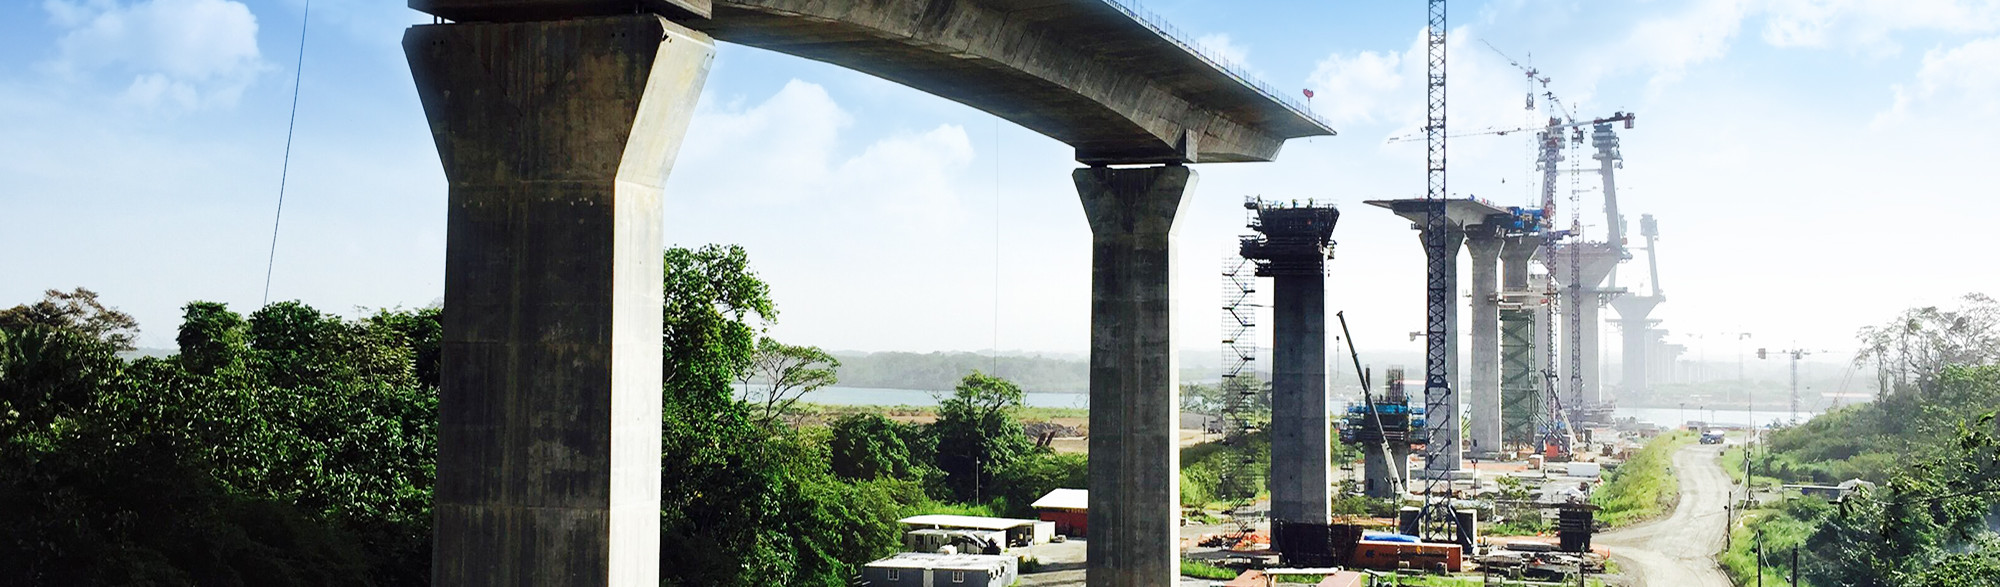 Atlantic Bridge - Tercer puente sobre el Canal de Panamá